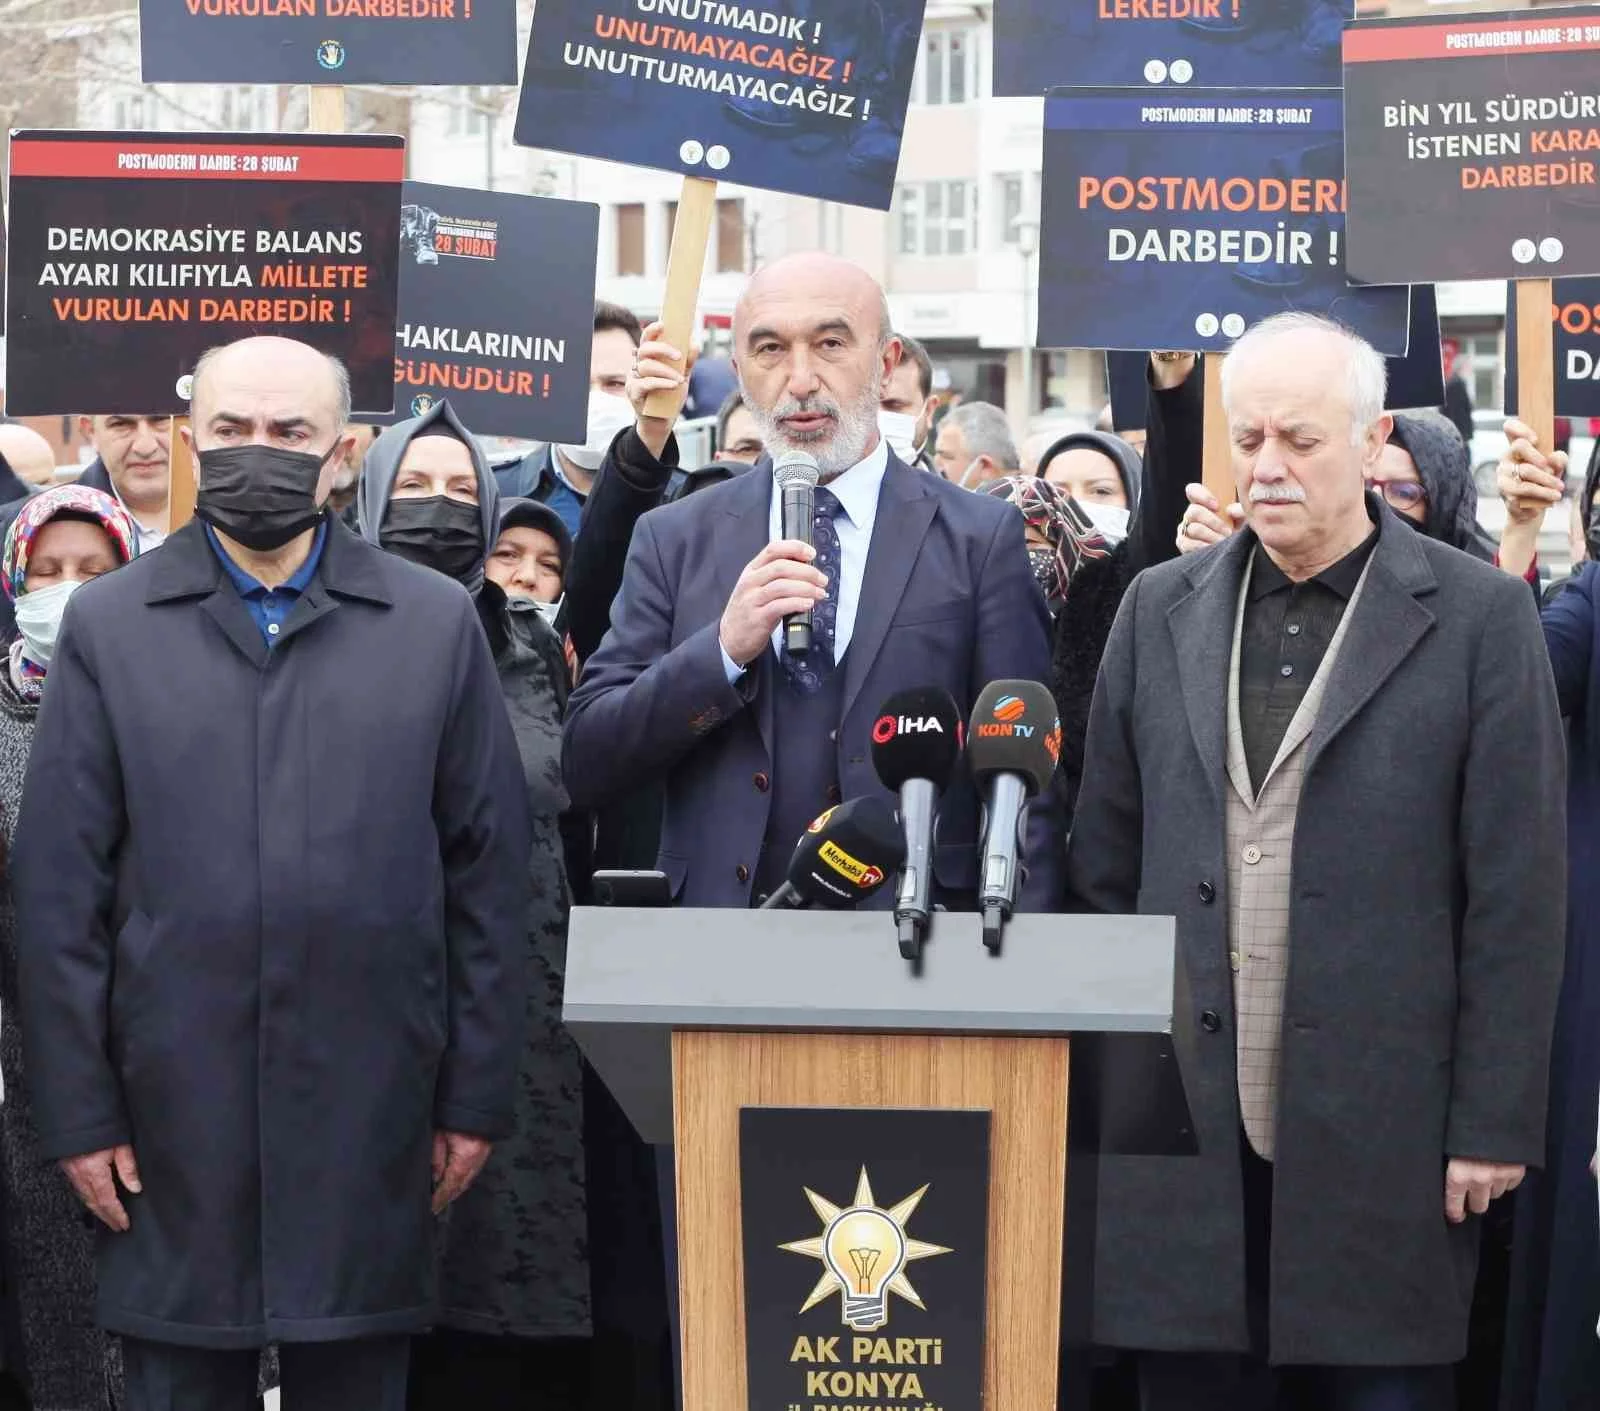 AK Parti Konya İl Başkanı Angı: “Biz 28 Şubatı bin yıl geçse de unutmayacağız”